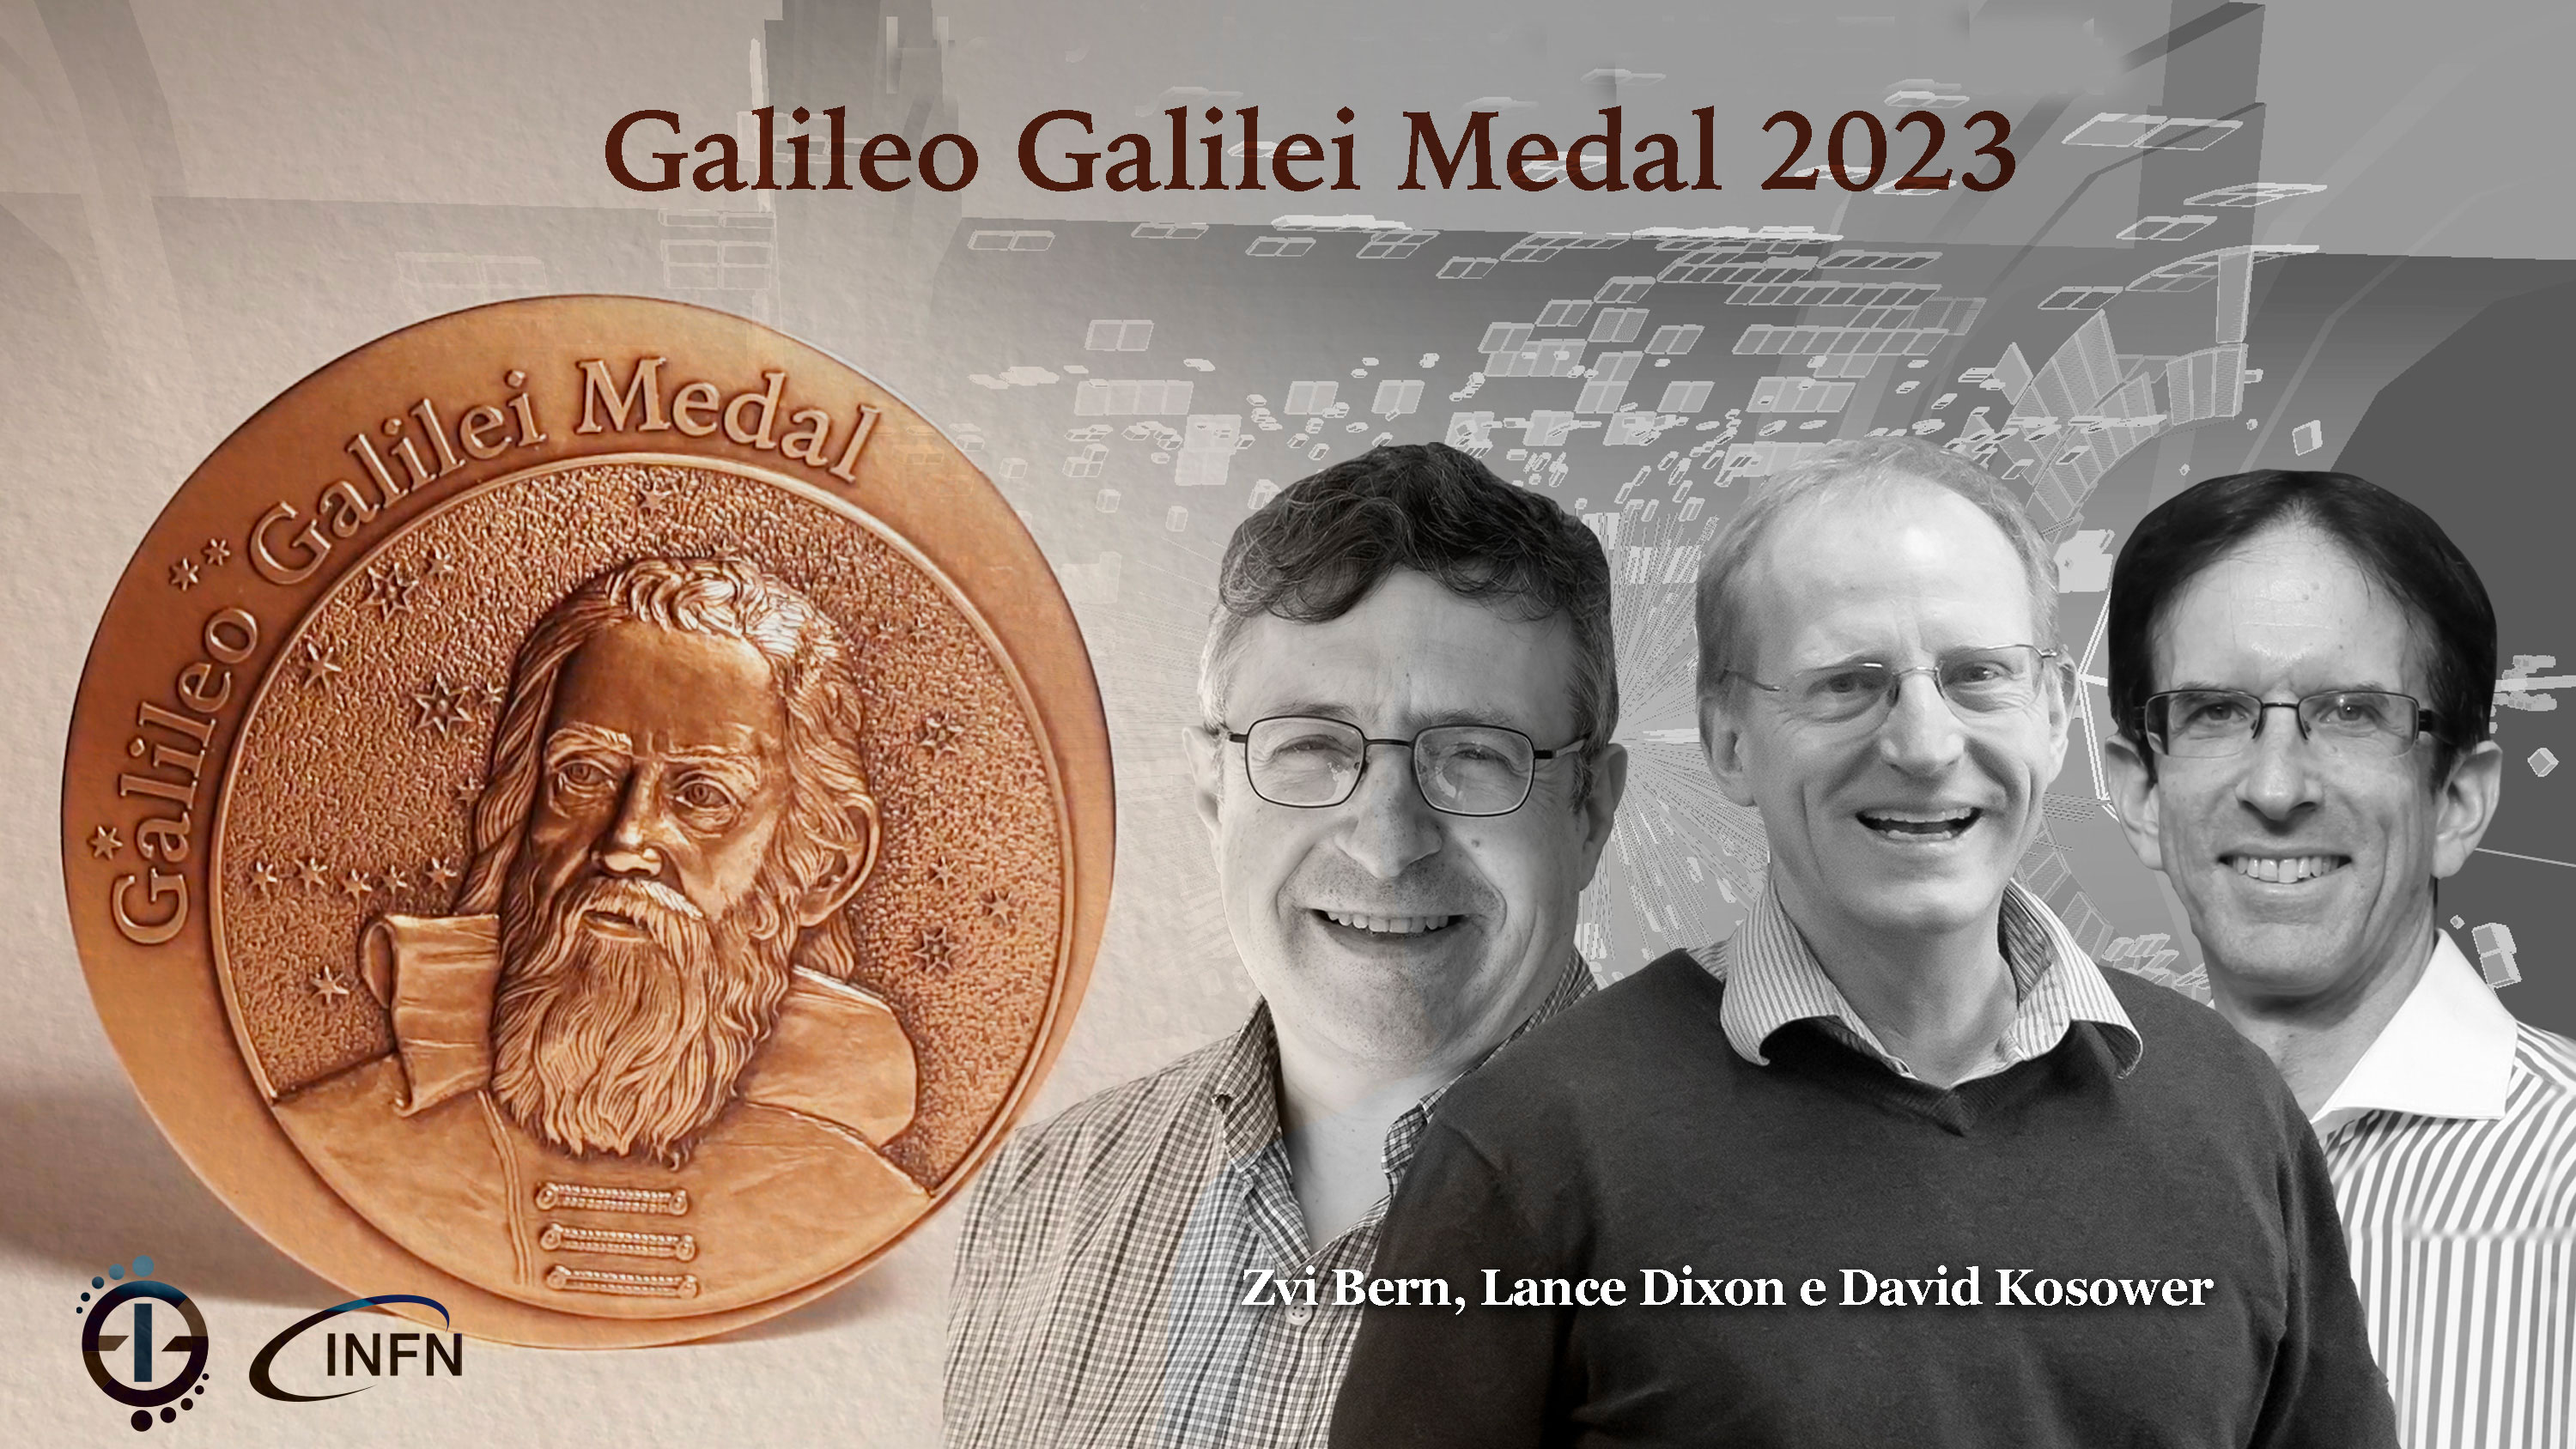 Galileo Galilei Medal 2023